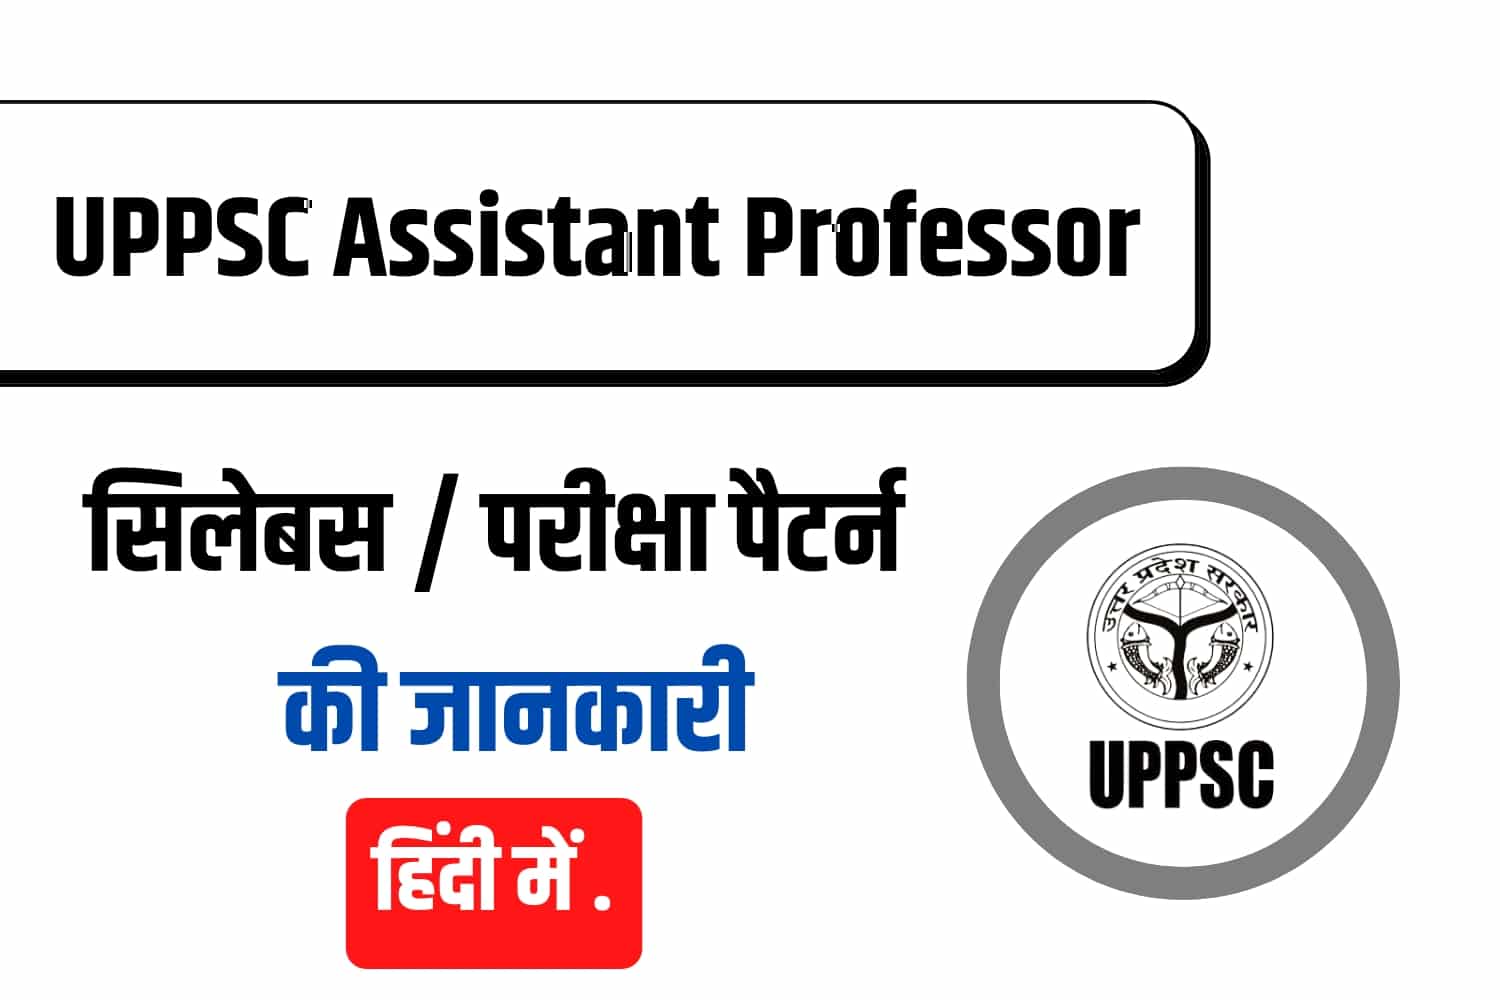 UPPSC Assistant Professor Syllabus In Hindi | उत्तर प्रदेश सहायक प्रोफेसर सिलेबस हिंदी में